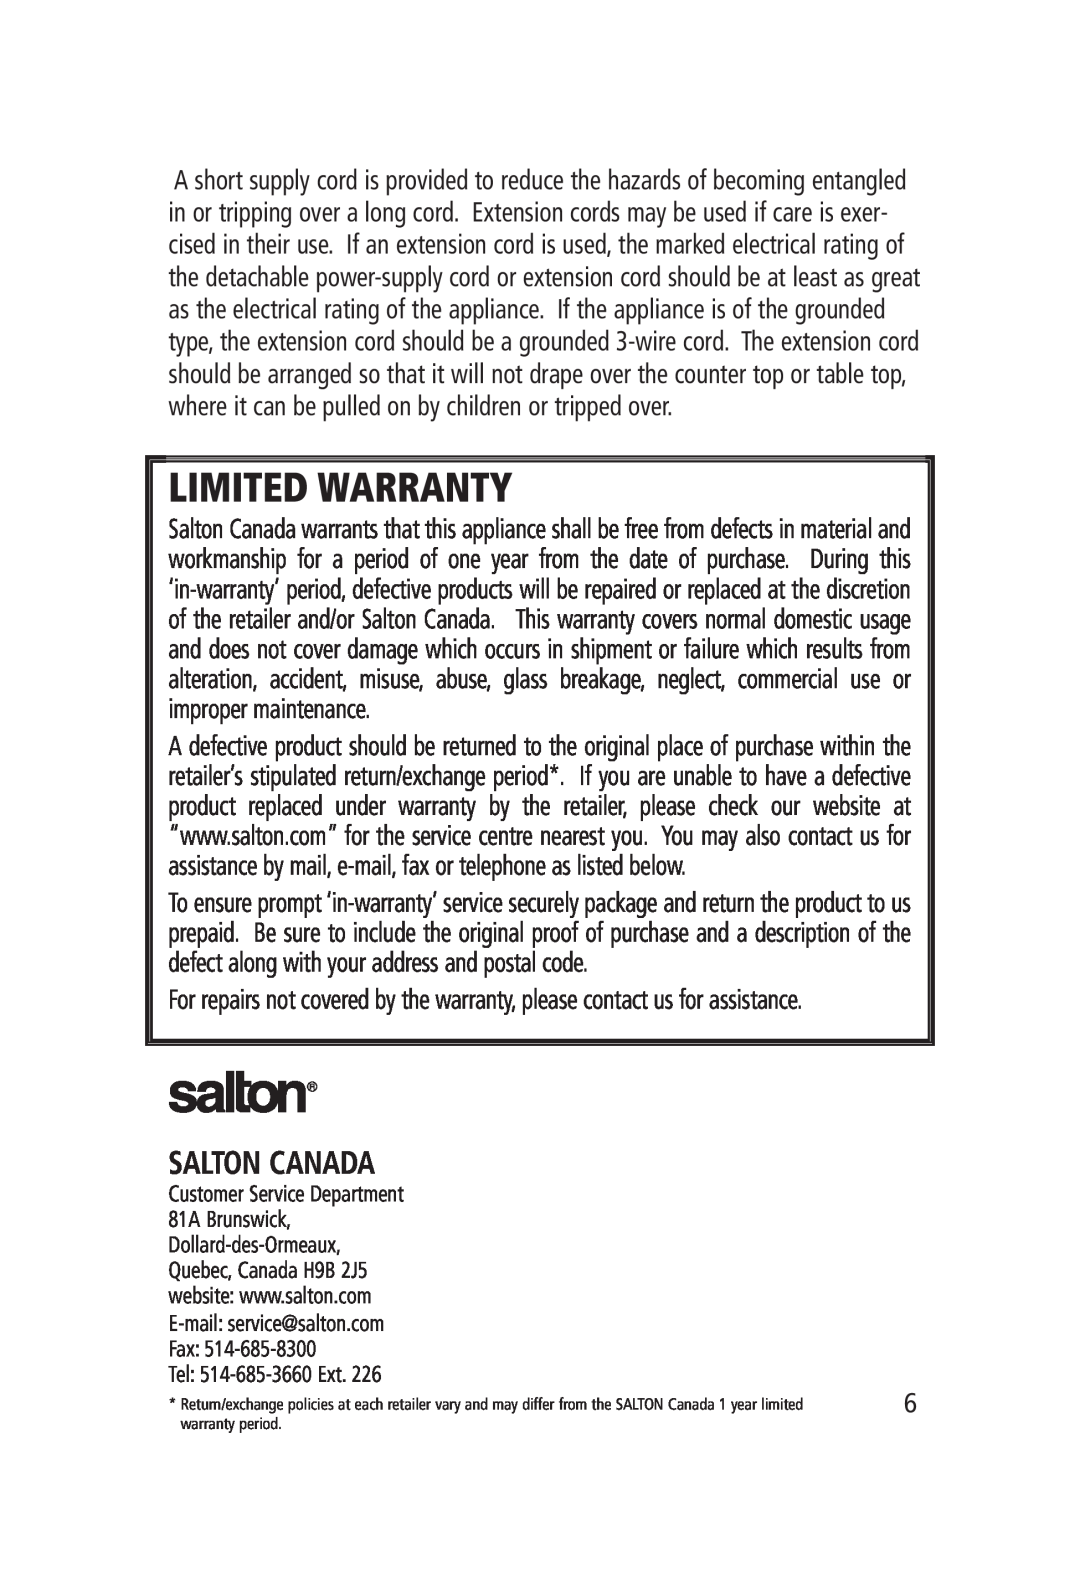 Salton FC-1191 manual Salton Canada, Limited Warranty, Tel 514-685-3660Ext 